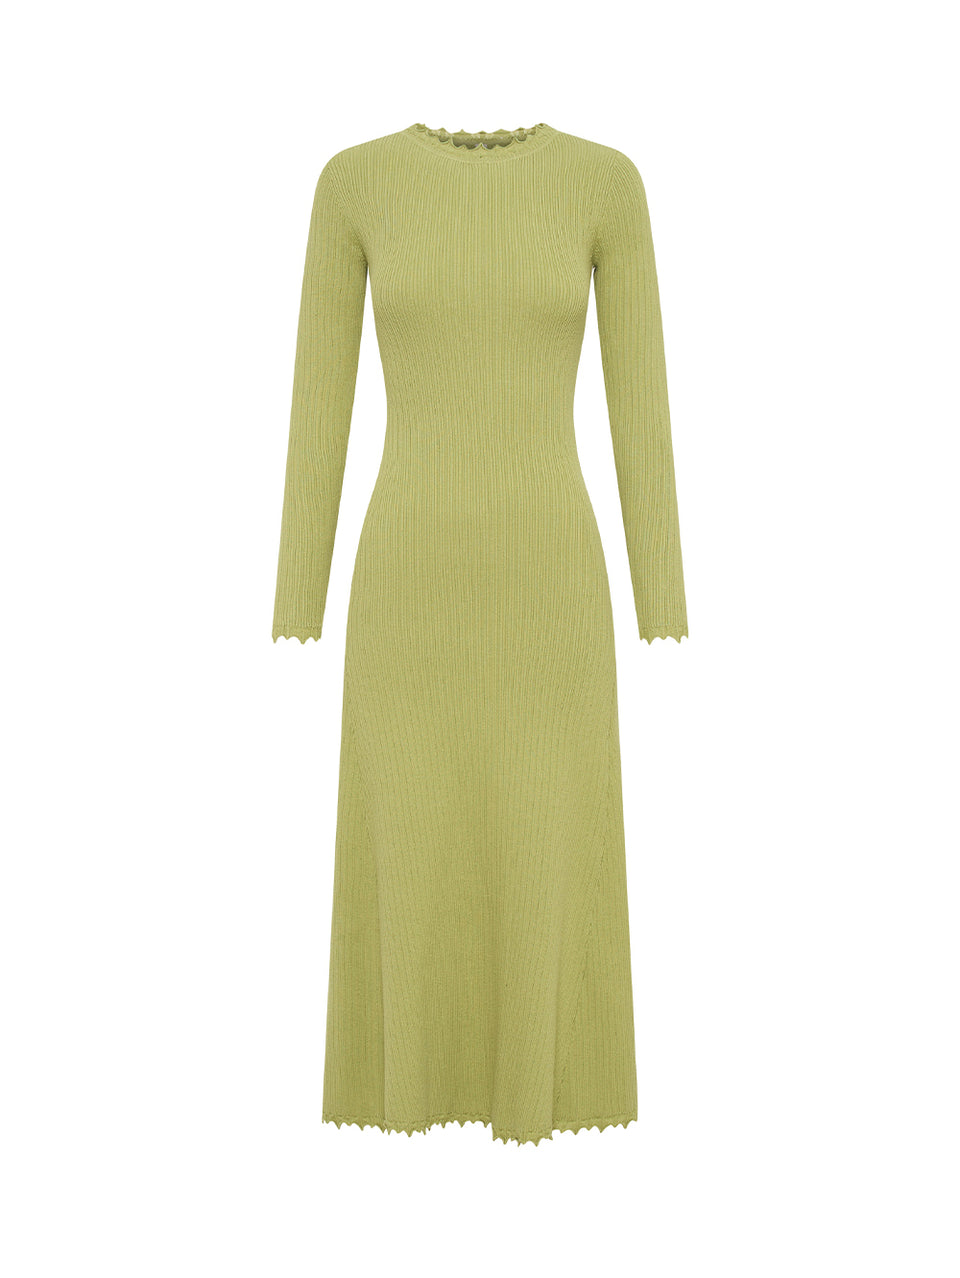 Diana Knit Dress KIVARI | Green Knit Dress